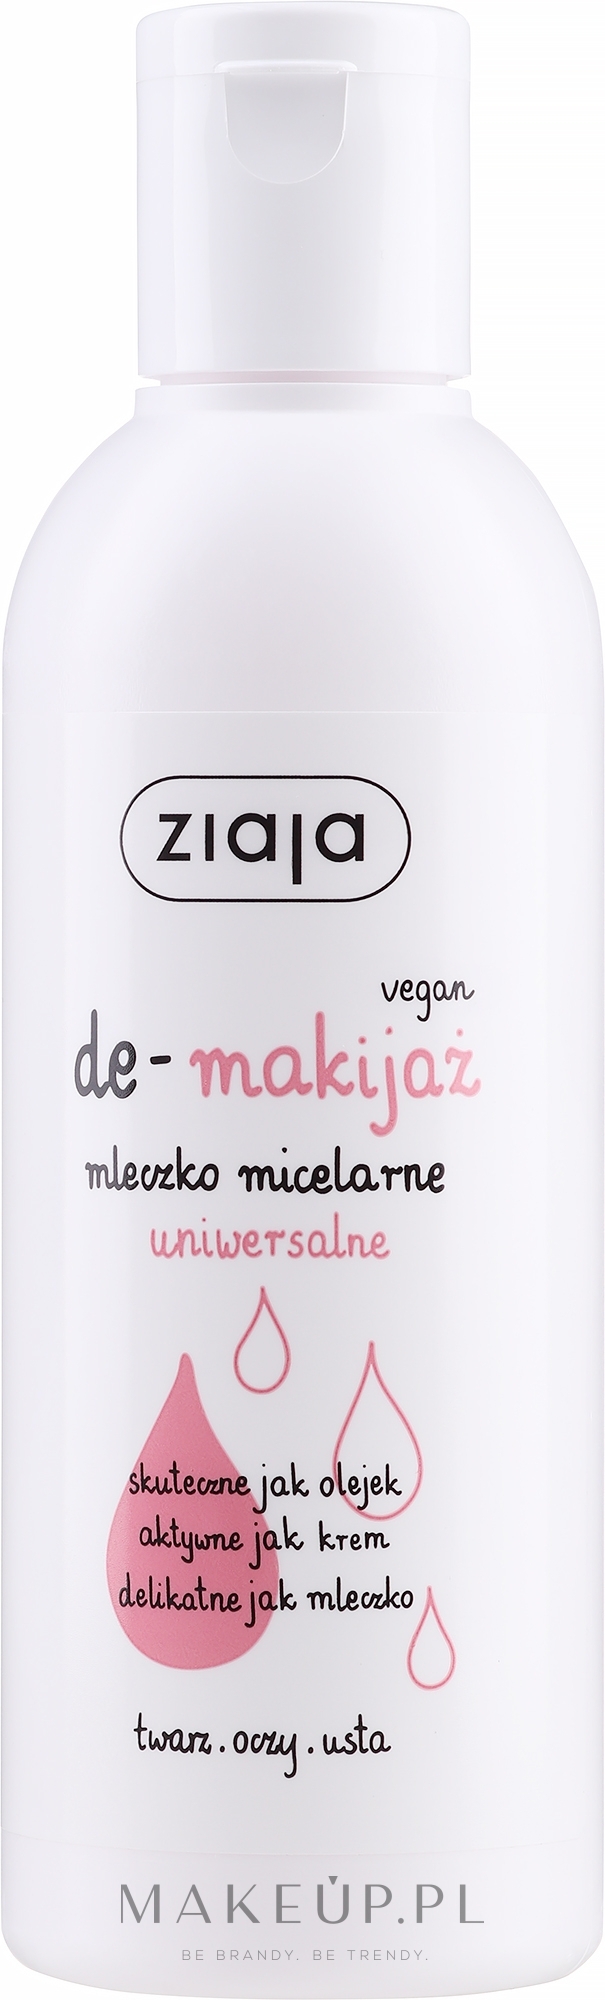 Uniwersalne mleczko micelarne do demakijażu - Ziaja De-makijaż — Zdjęcie 200 ml